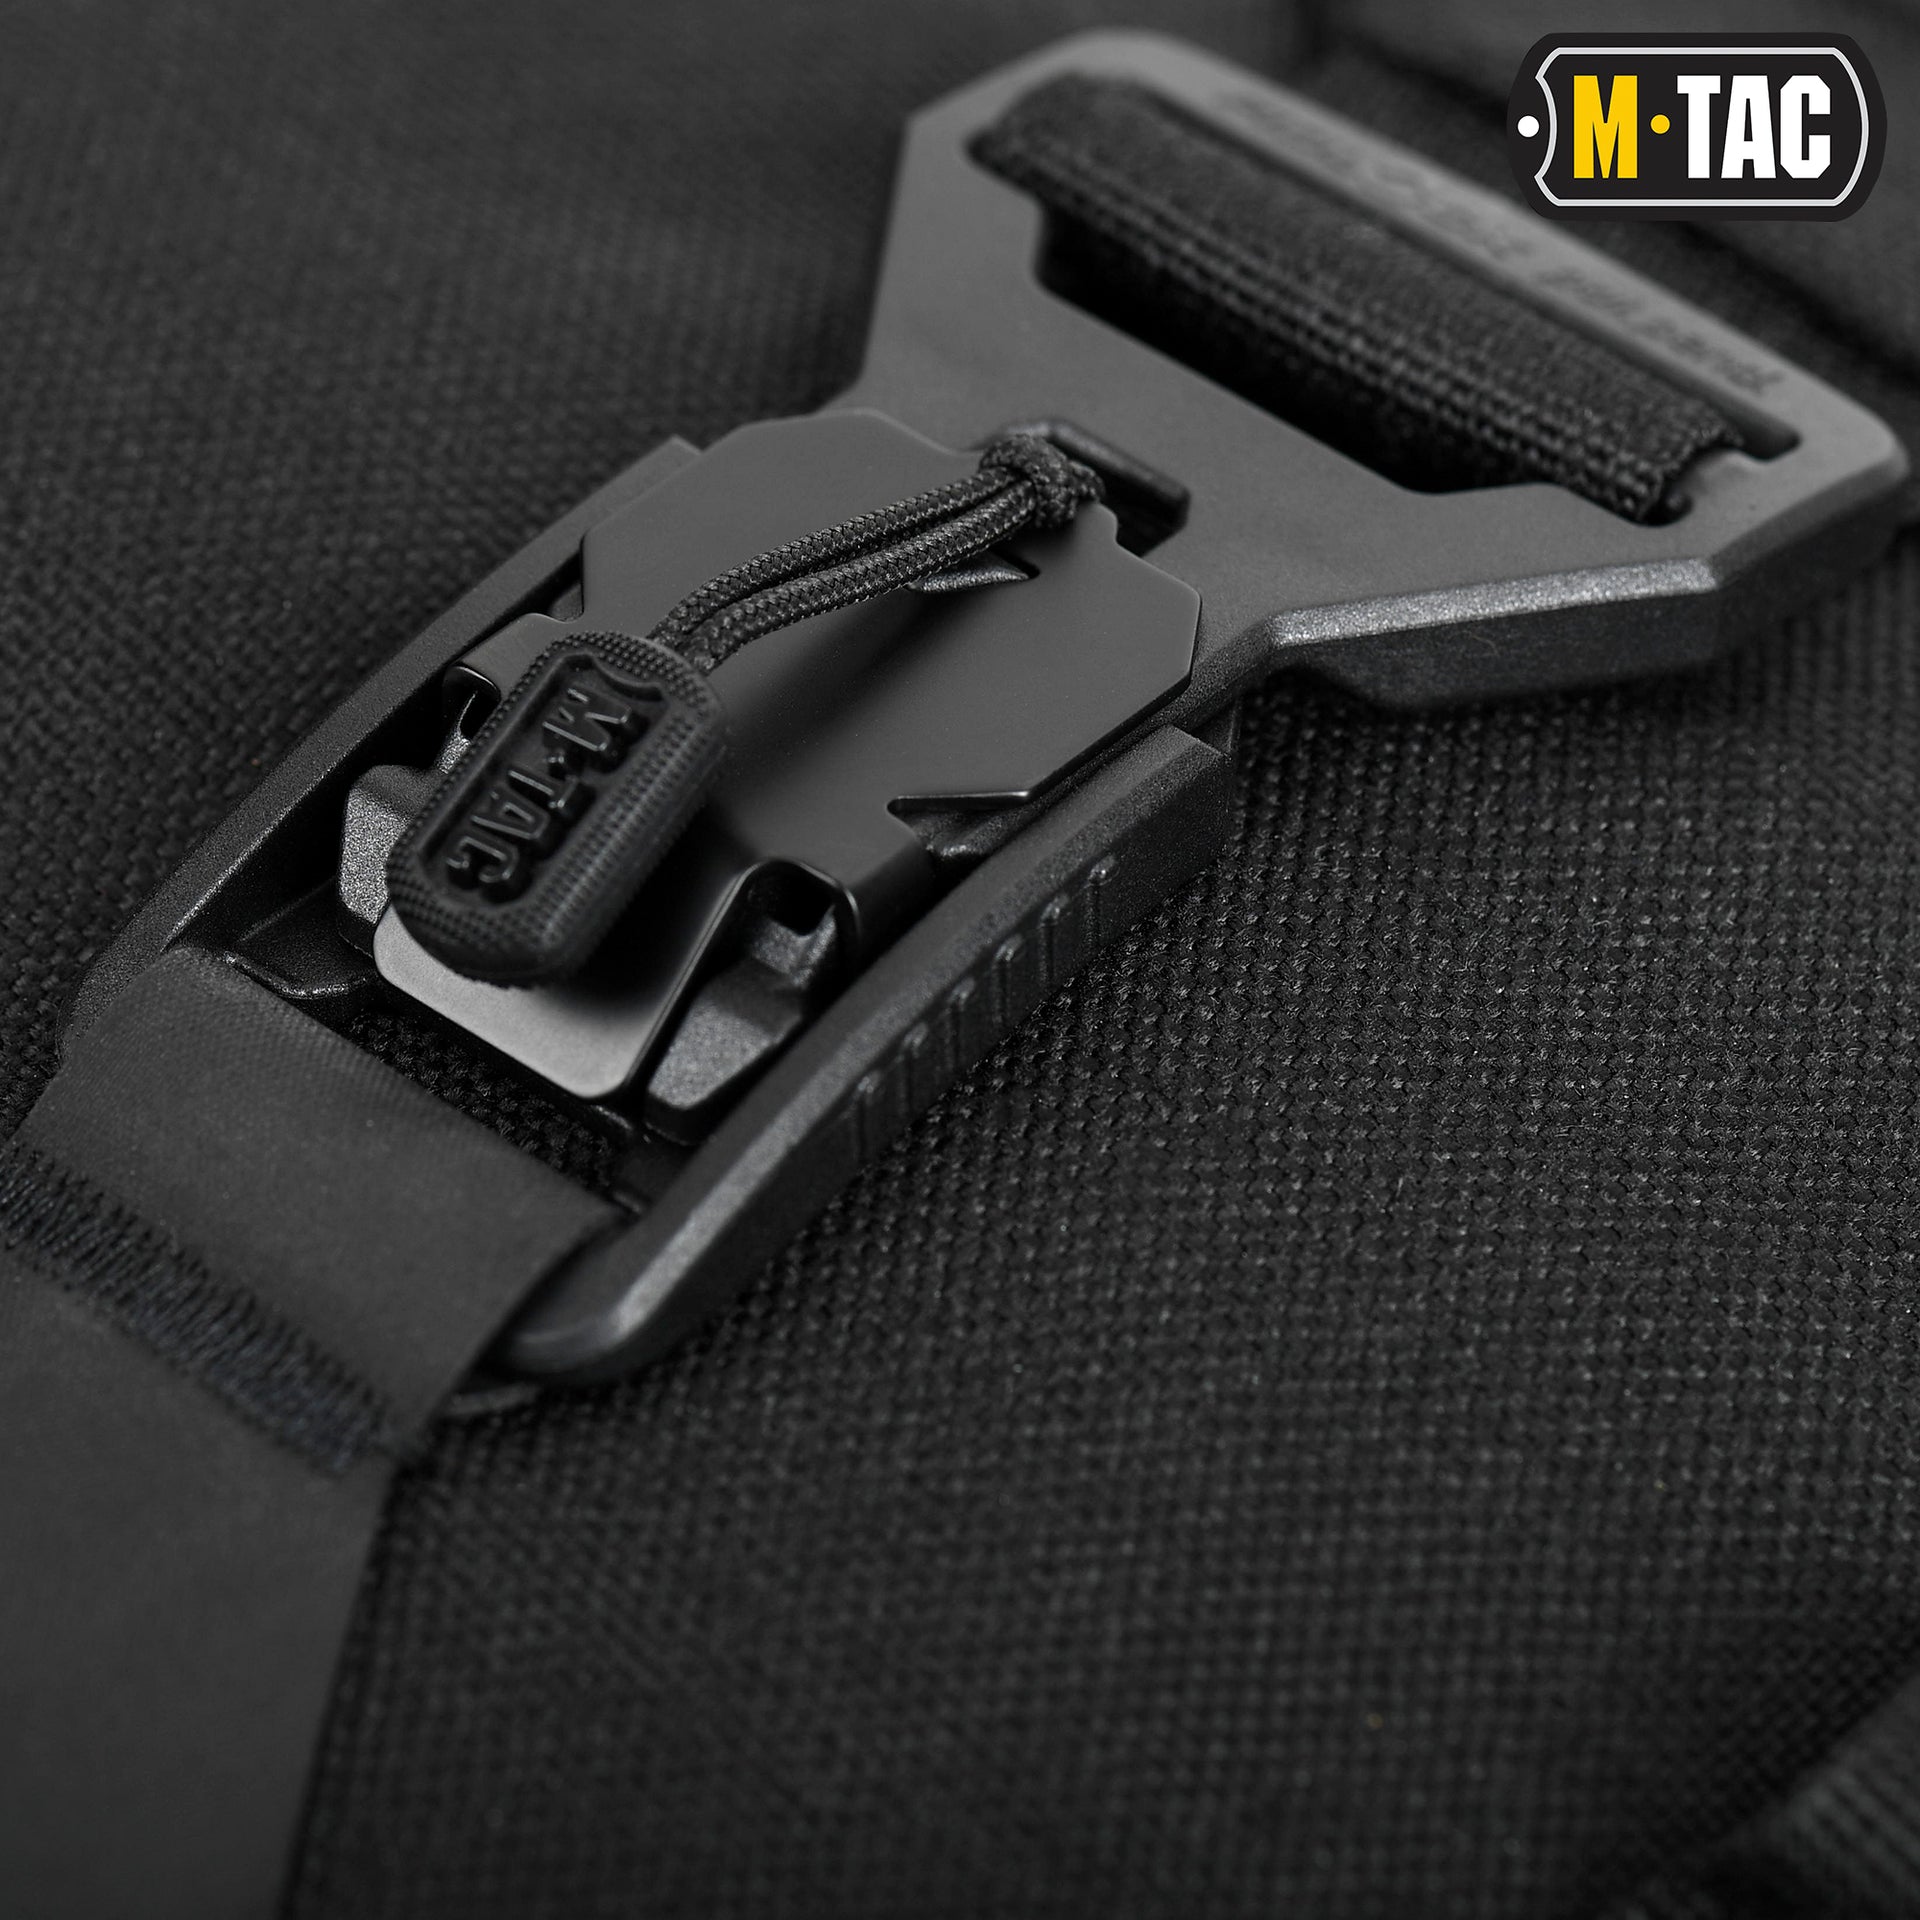 M-Tac Magnet Bag